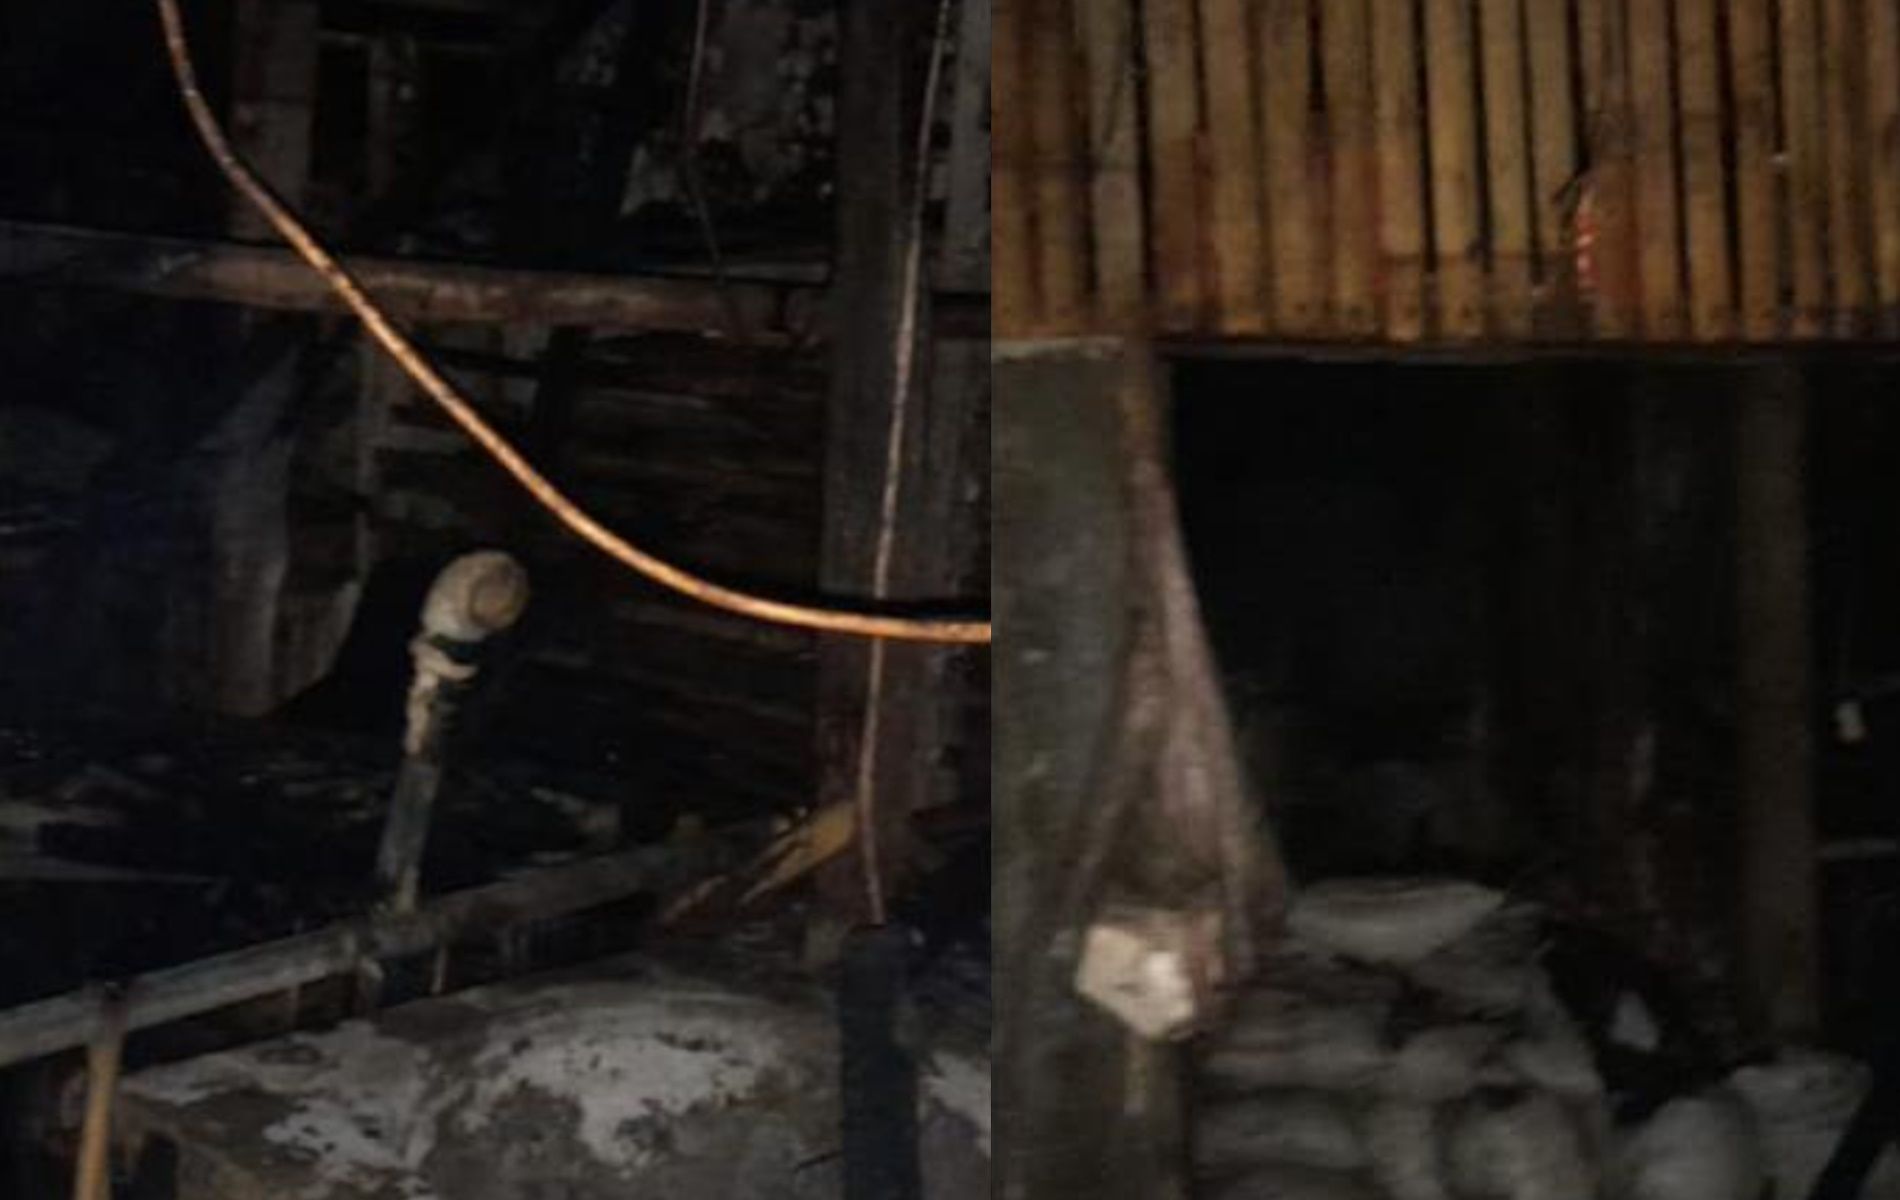 Kebakaran terjadi di sebuah pabrik pembuatan tahu di Desa Pasir Angin, Kabupaten Bogor. Kebakaran diduga akibat wajan bocor.